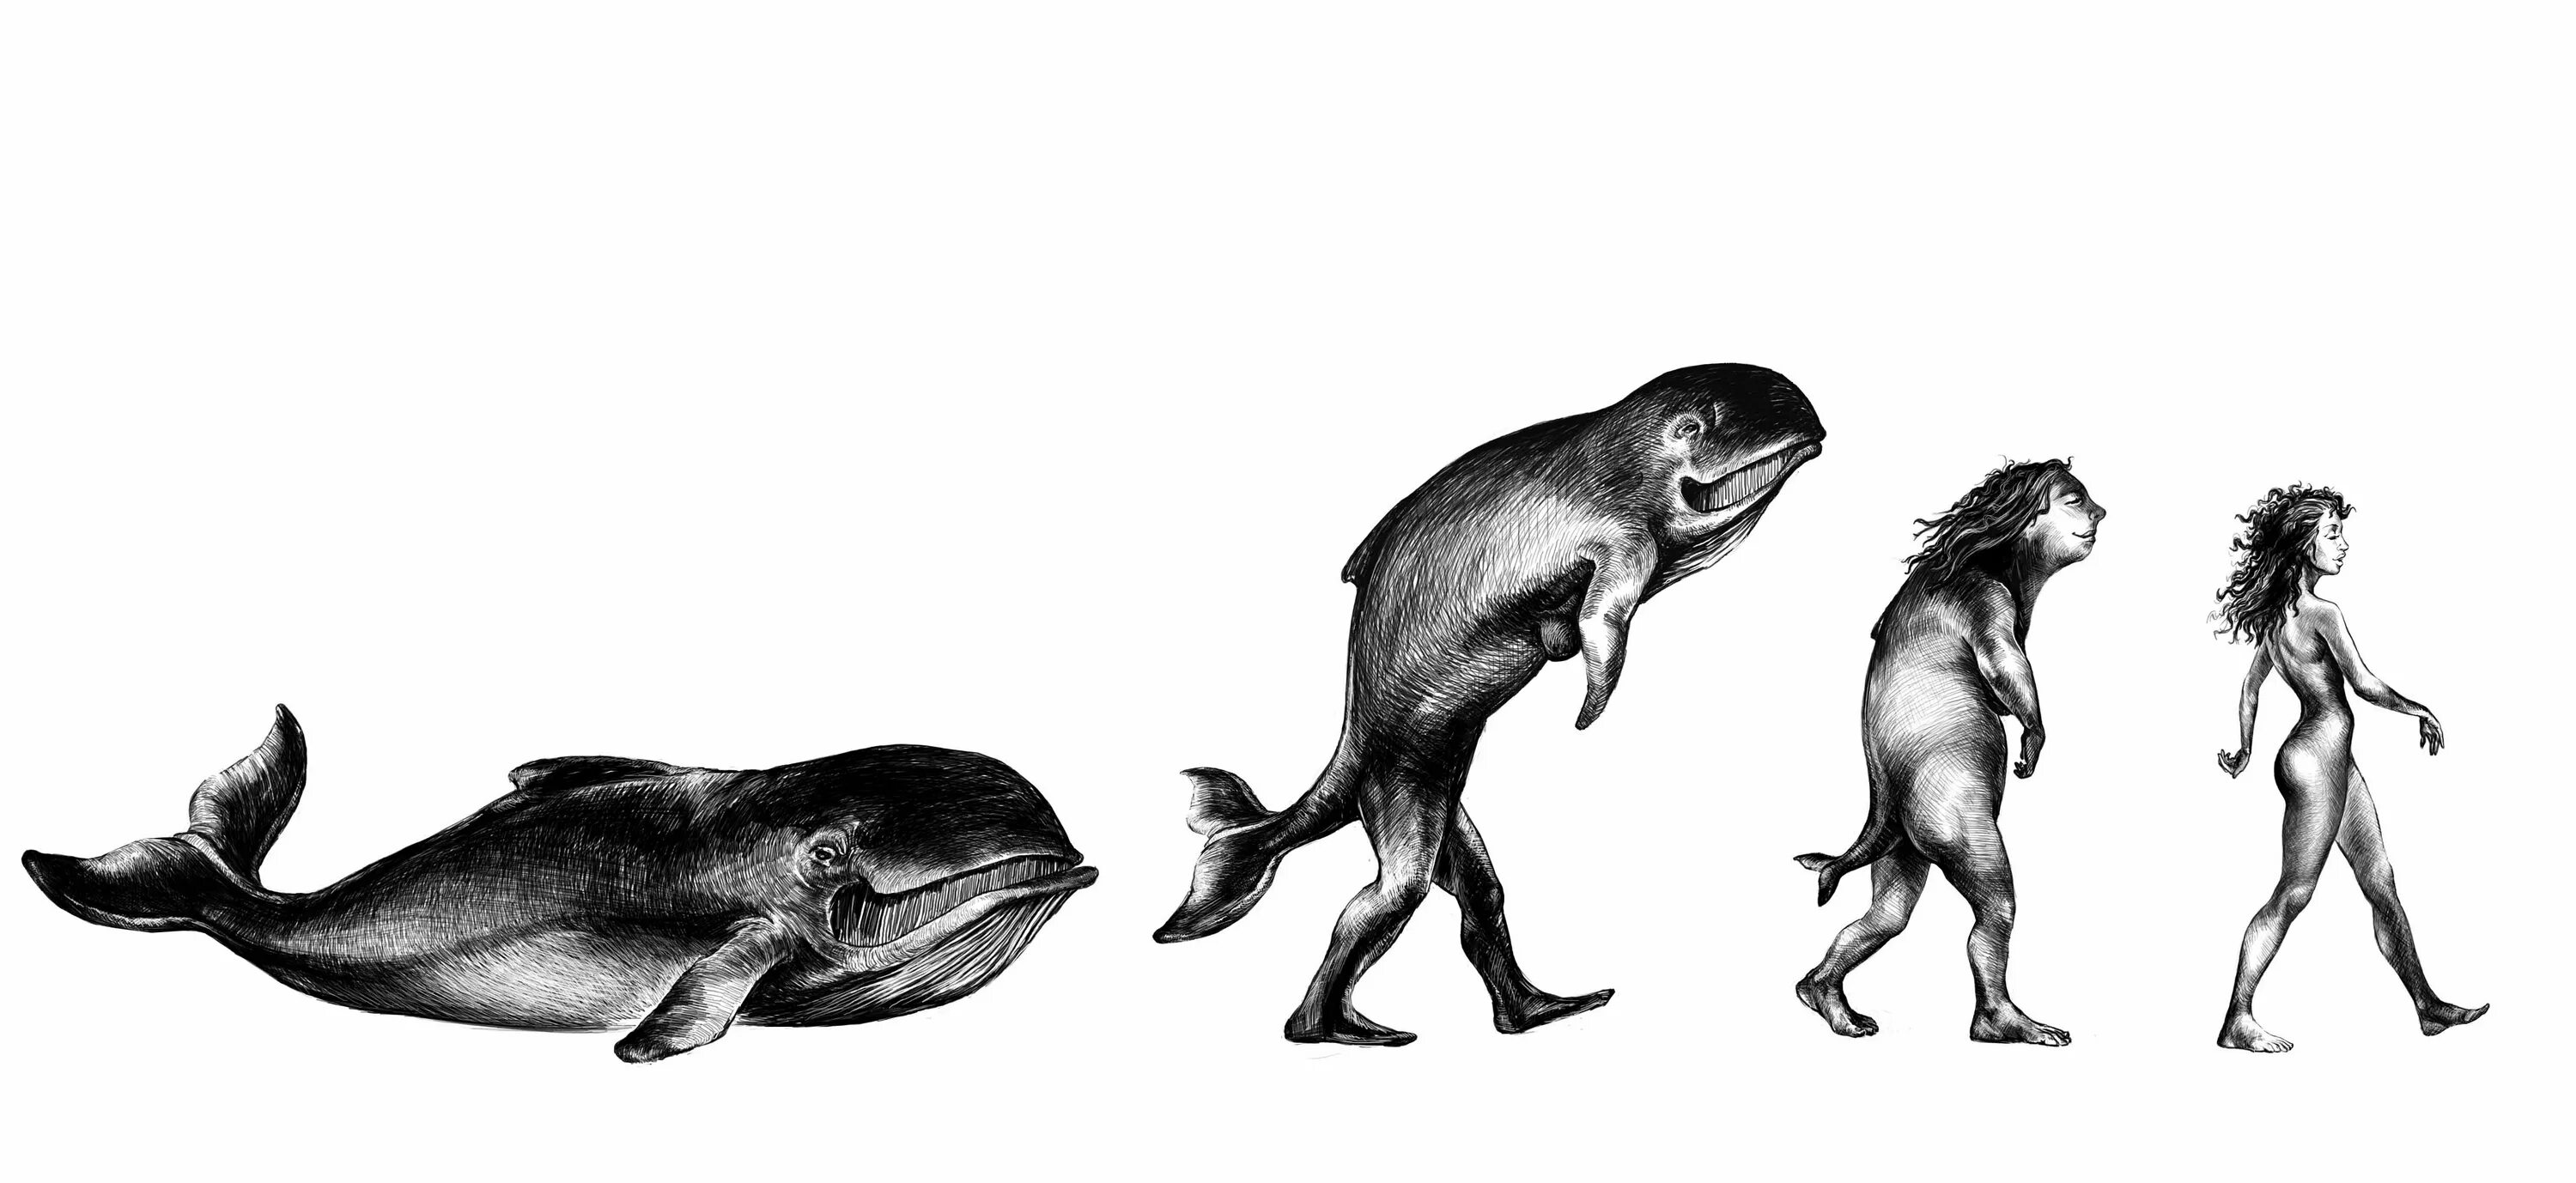 Жизни путем эволюции. Эволюция дельфинов. Человек произошел от рыбы. Люди произошли от дельфинов. Эволюция из рыбы в человека.